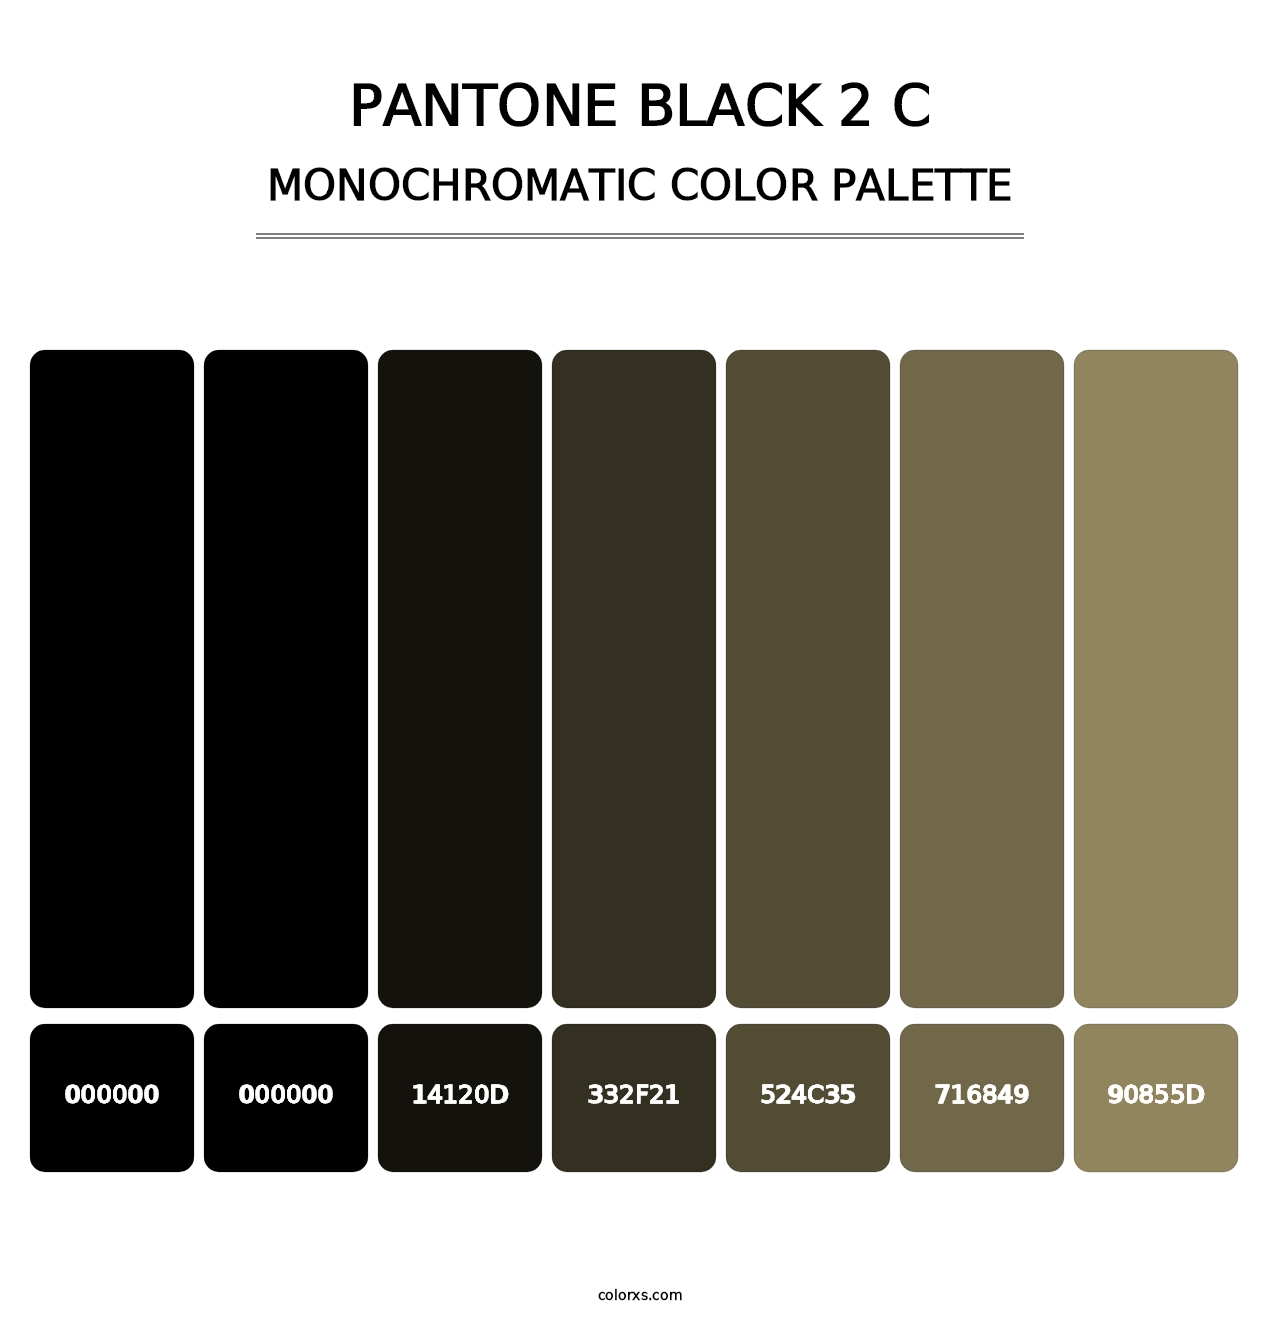 PANTONE Black 2 C - Monochromatic Color Palette